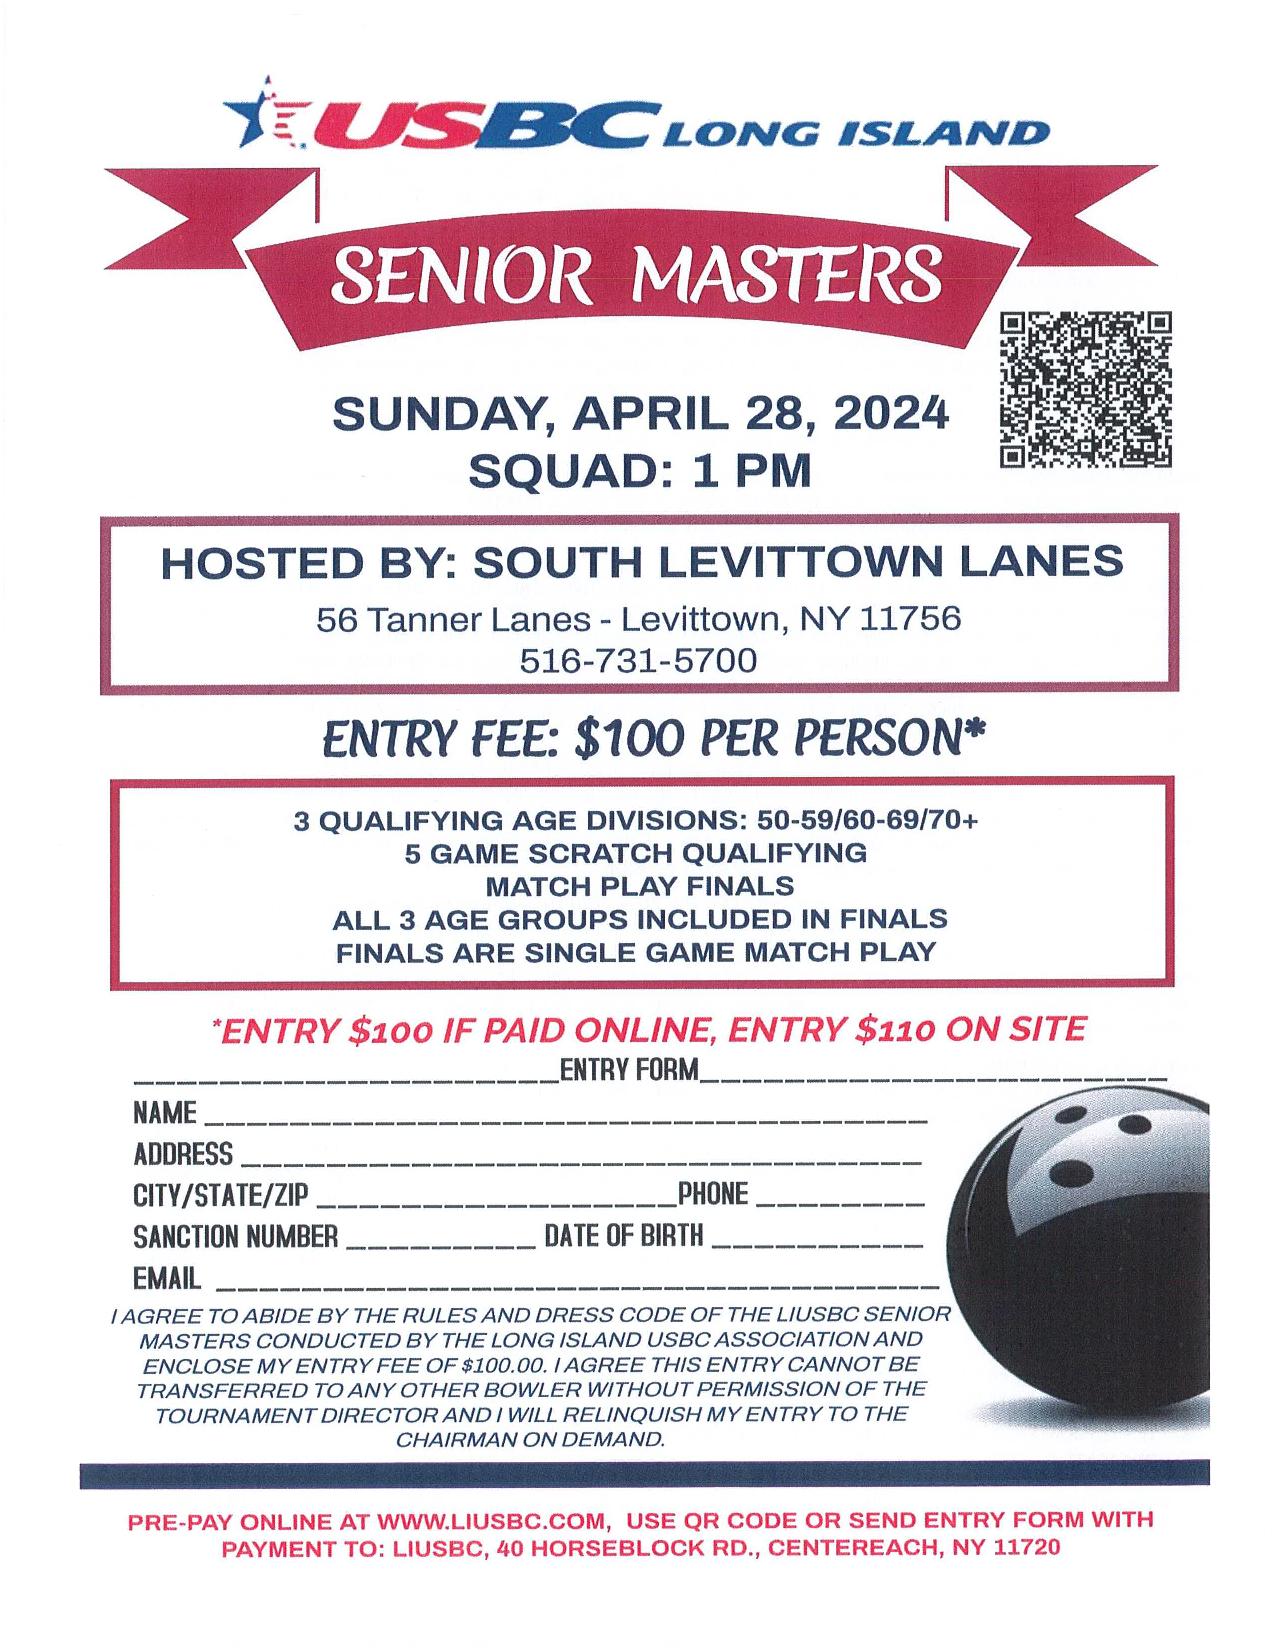 LIUSBC Senior Masters Tournament